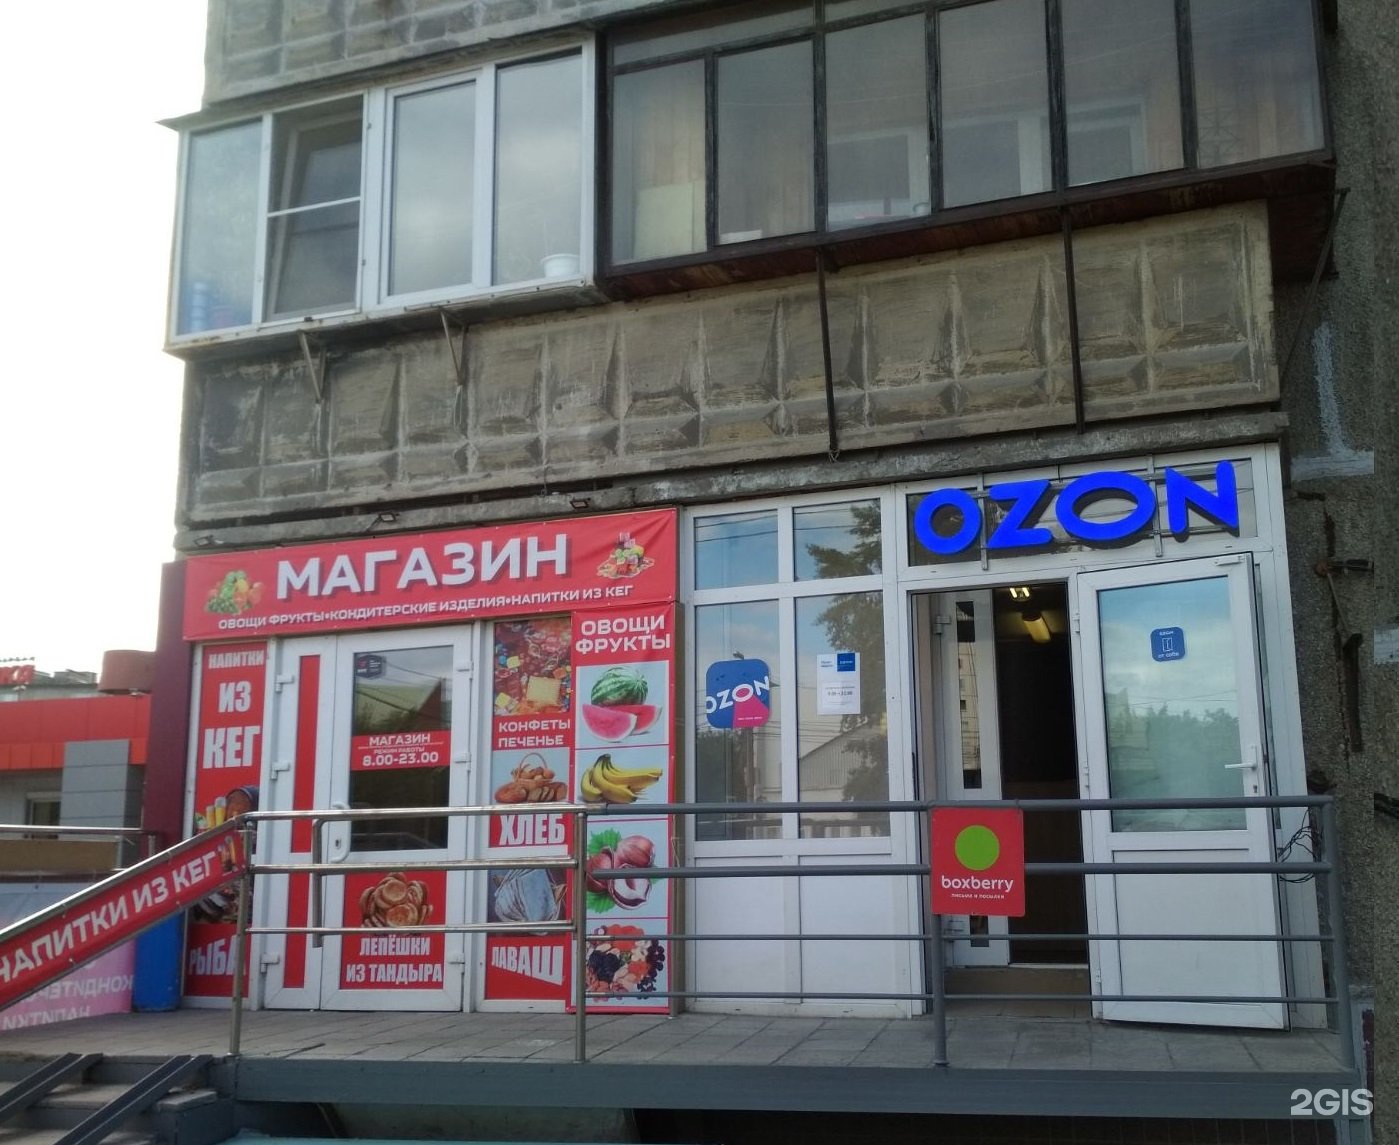 Ozon Ru Интернет Магазин Каталог Товаров Челябинск